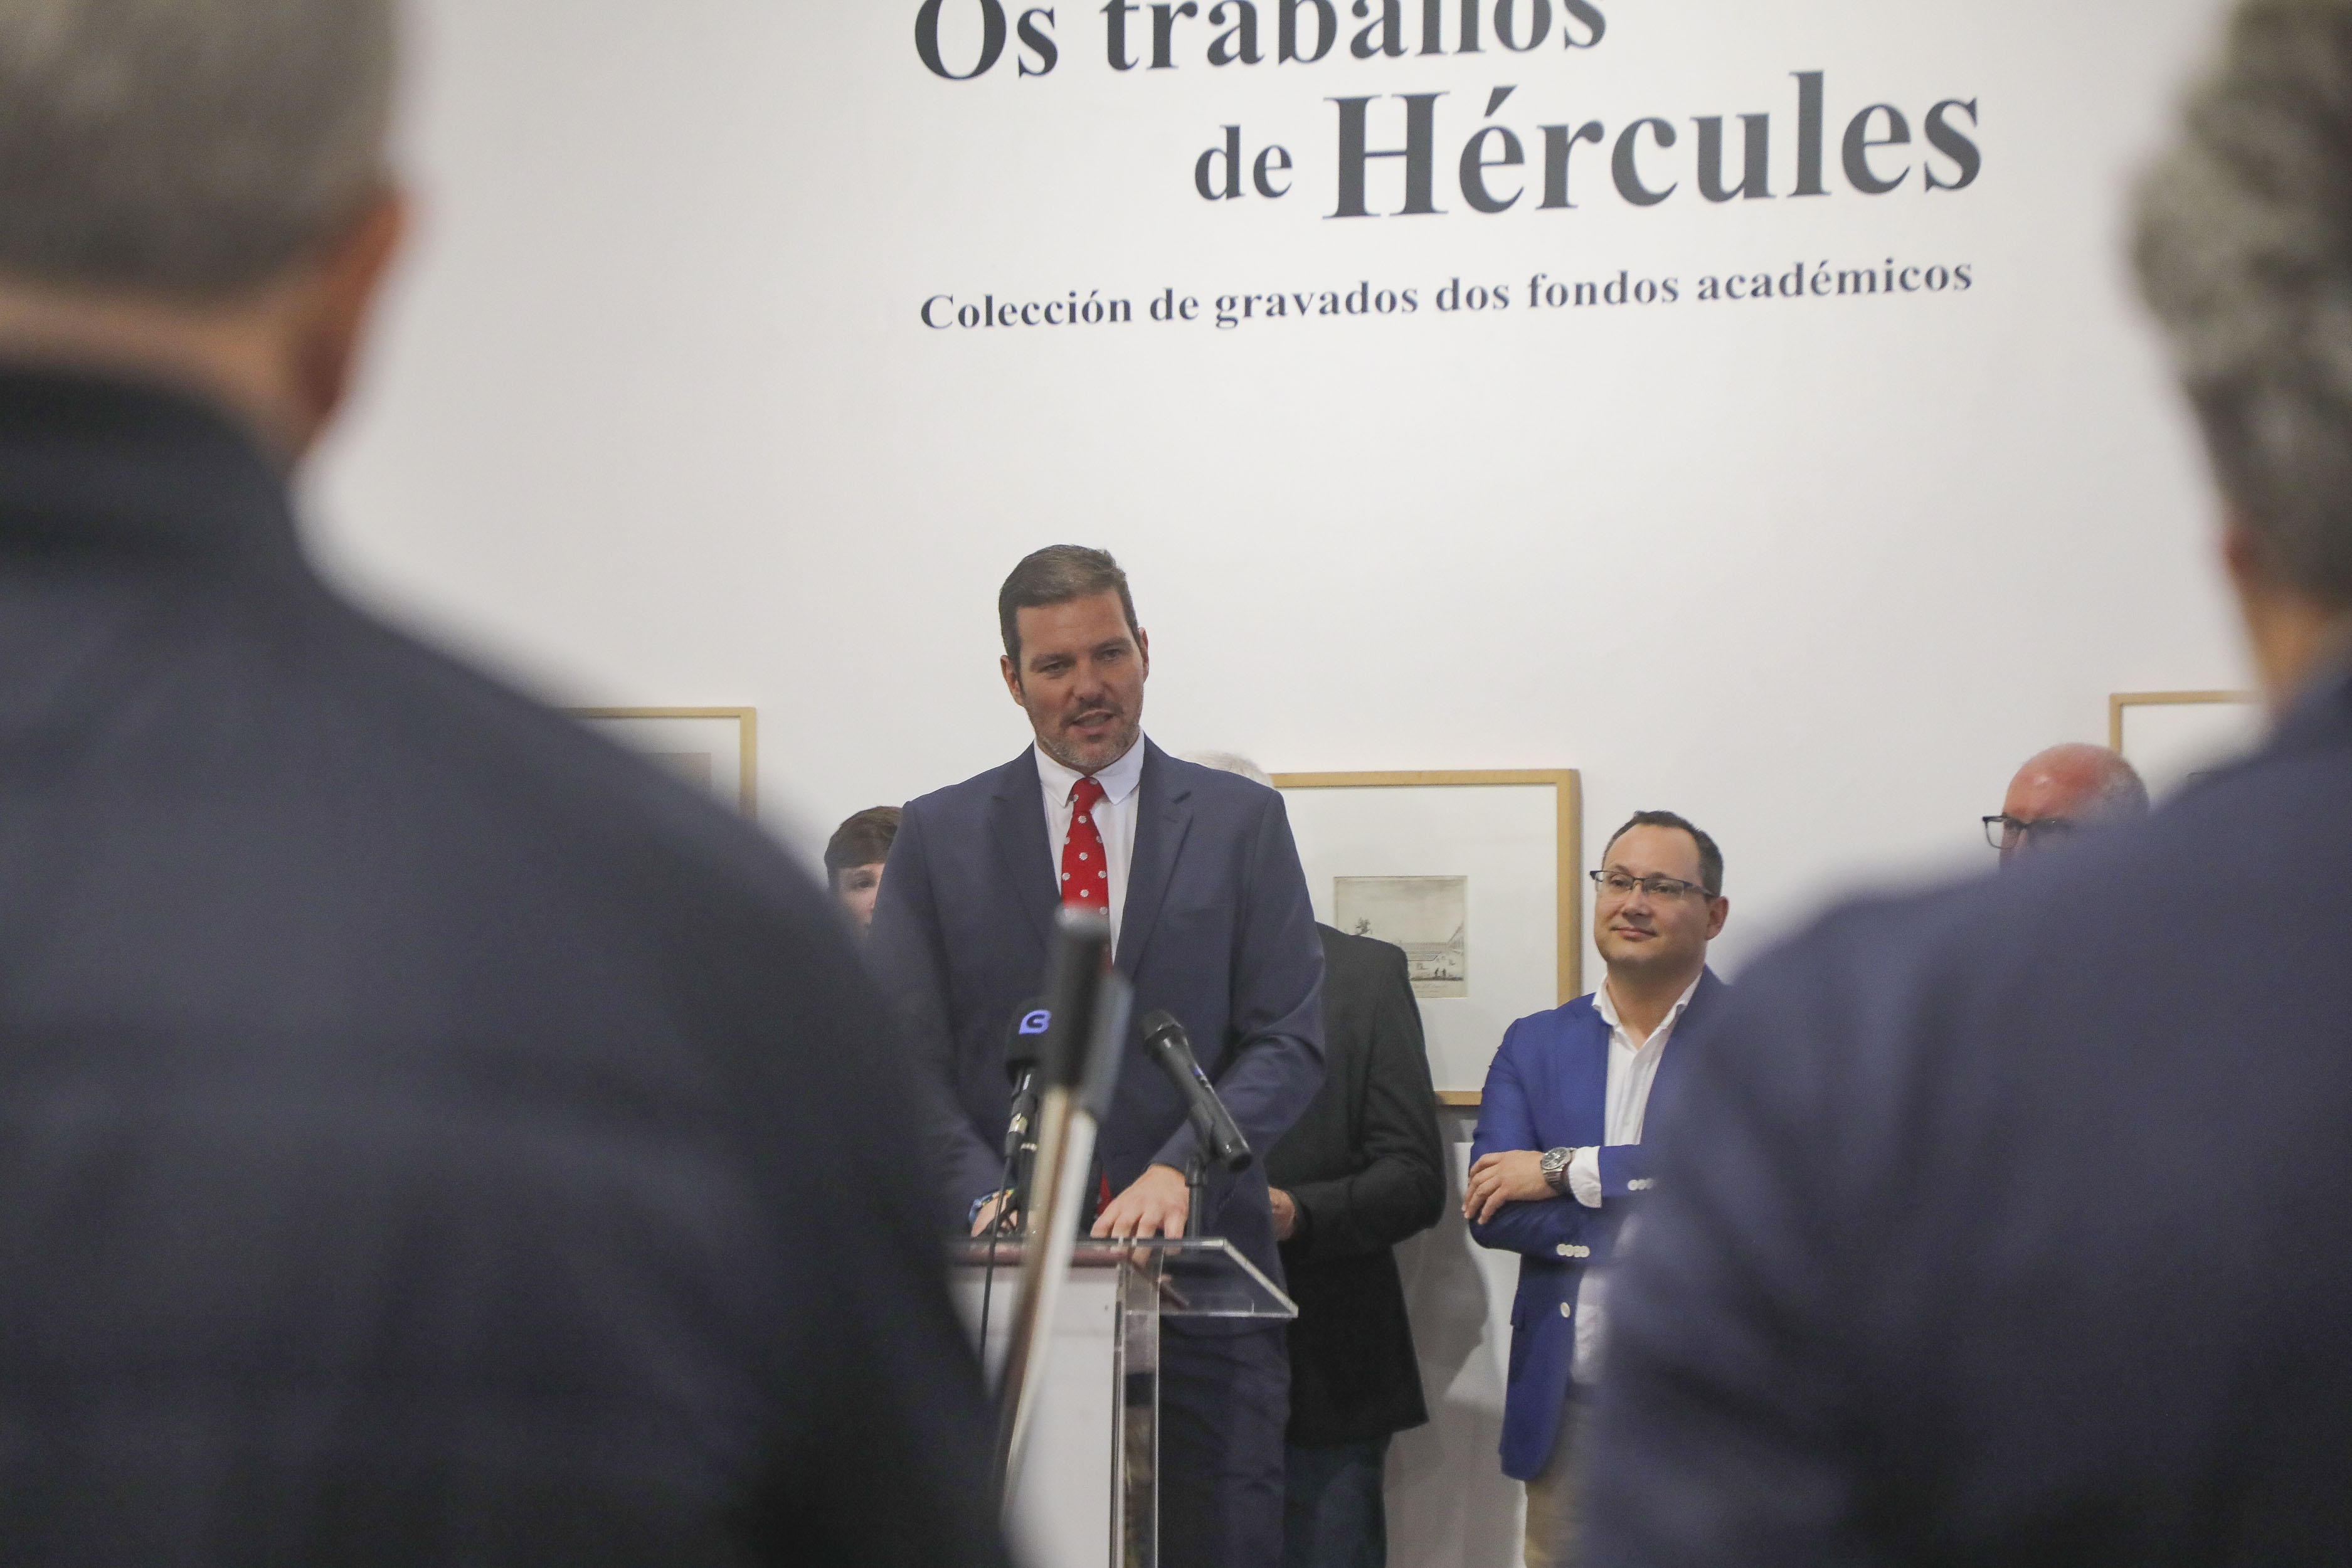 Image 2 of article López Campos convida a redescubrir a historia da Real Academia Galega de Belas Artes coa nova exposición Os traballos de Hércules